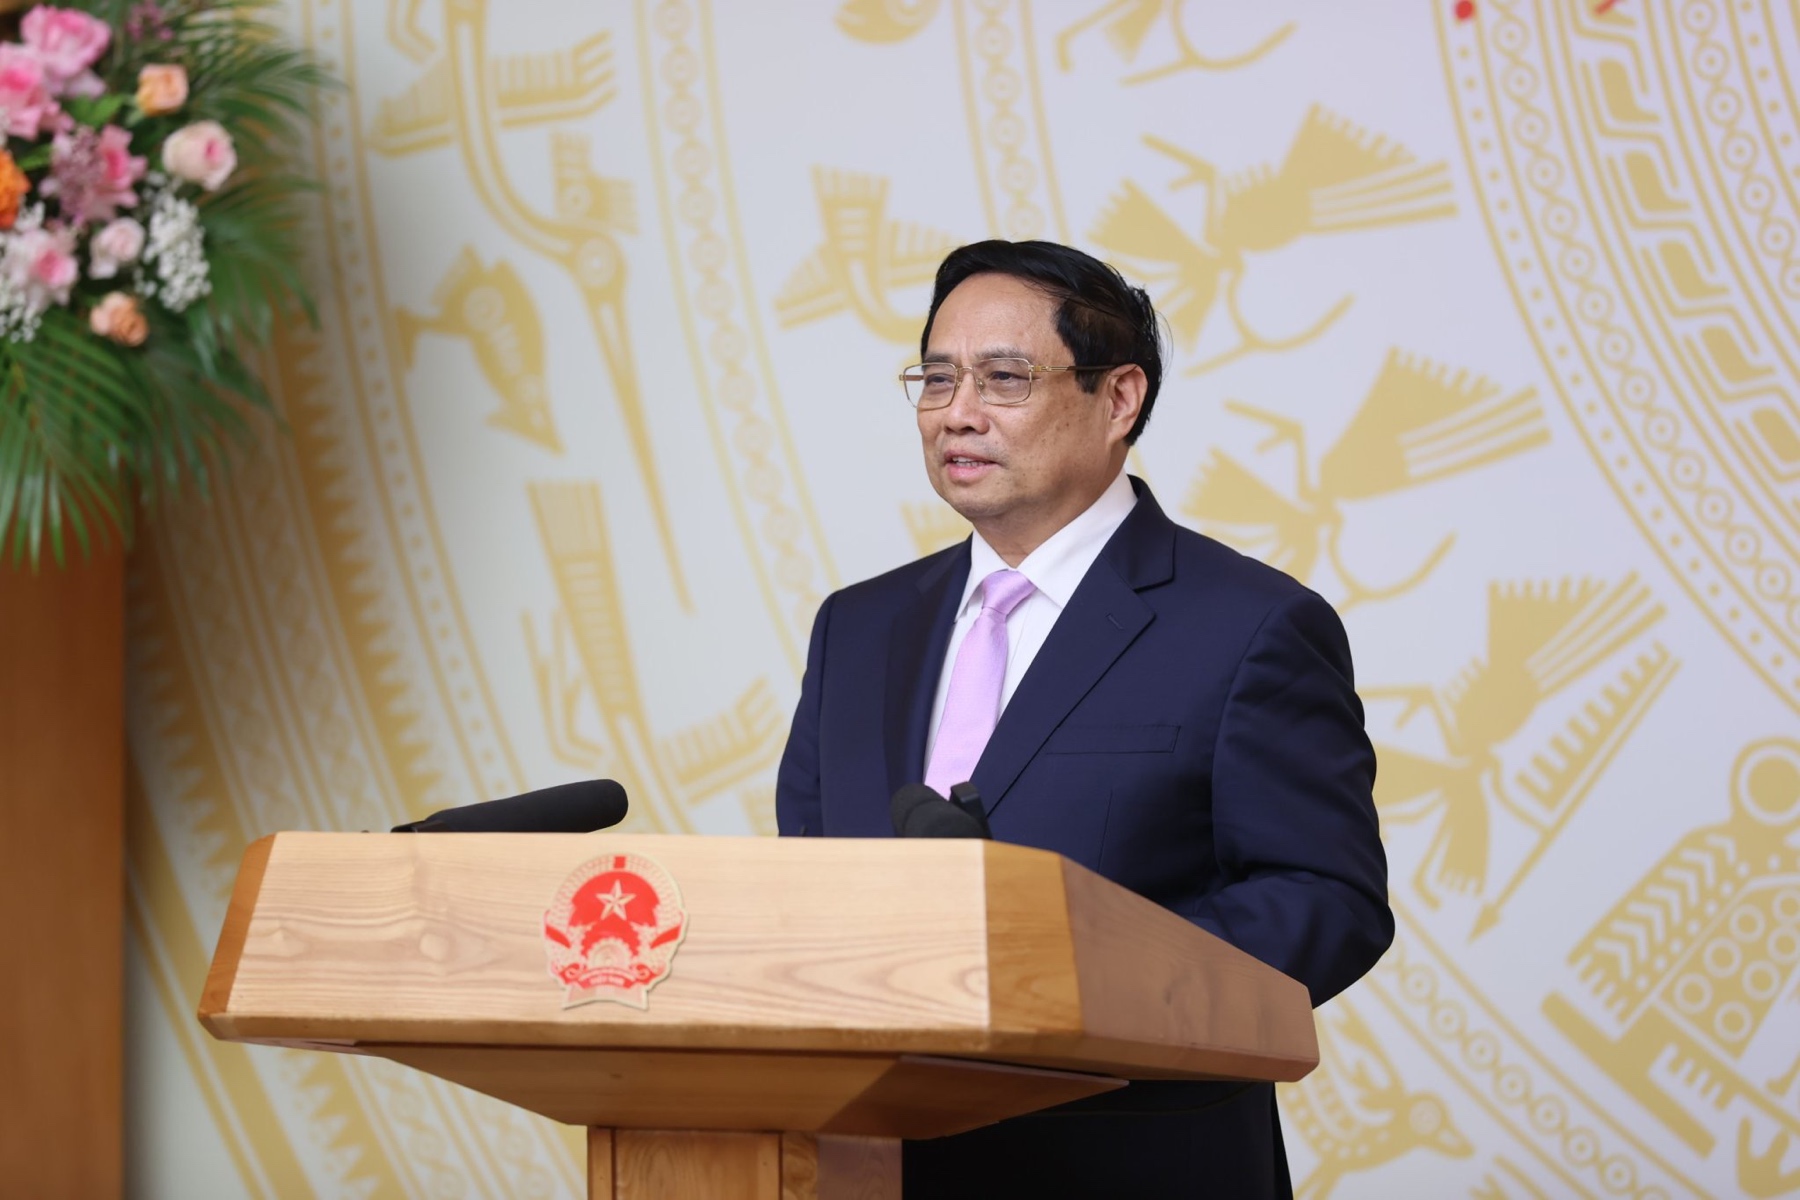 Thủ tướng phát biểu tại buổi gặp mặt đại diện các nhà giáo tiêu biểu vào chiều 17/11 - Ảnh: VGP/Quang Thương